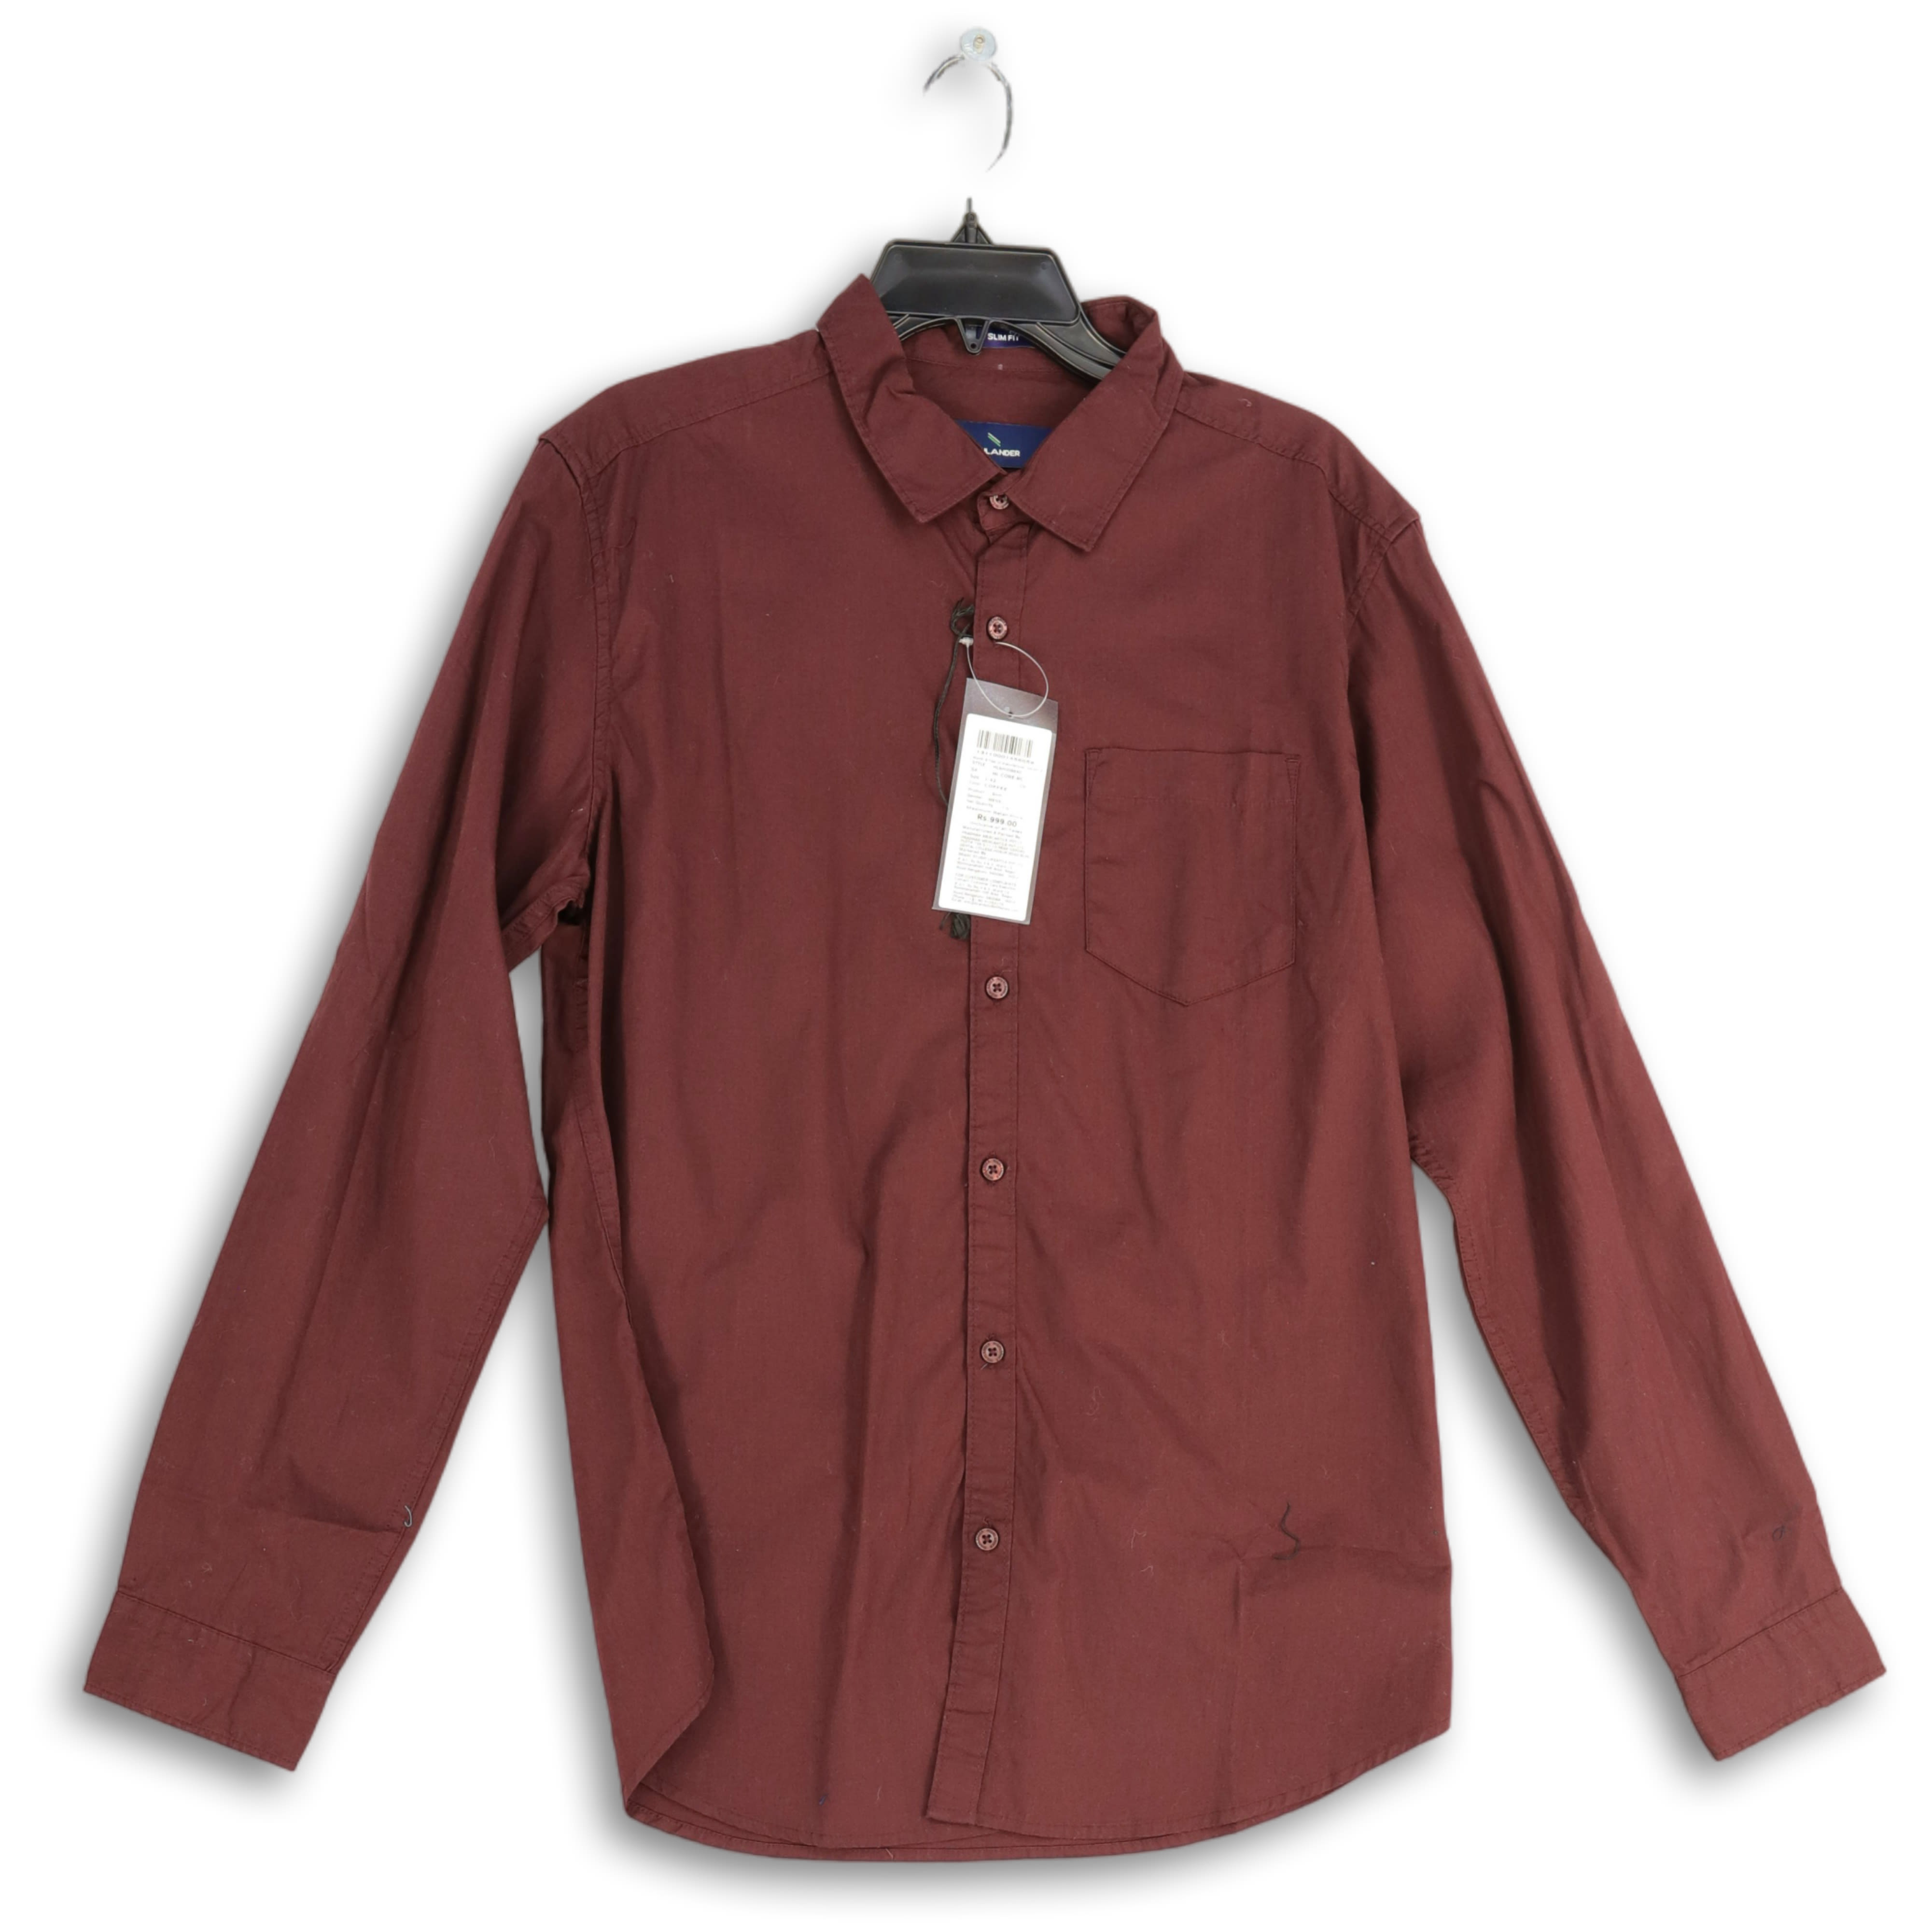 10pcs Bulk Items Wholesale Lots Casual Solid Color Shirt Button